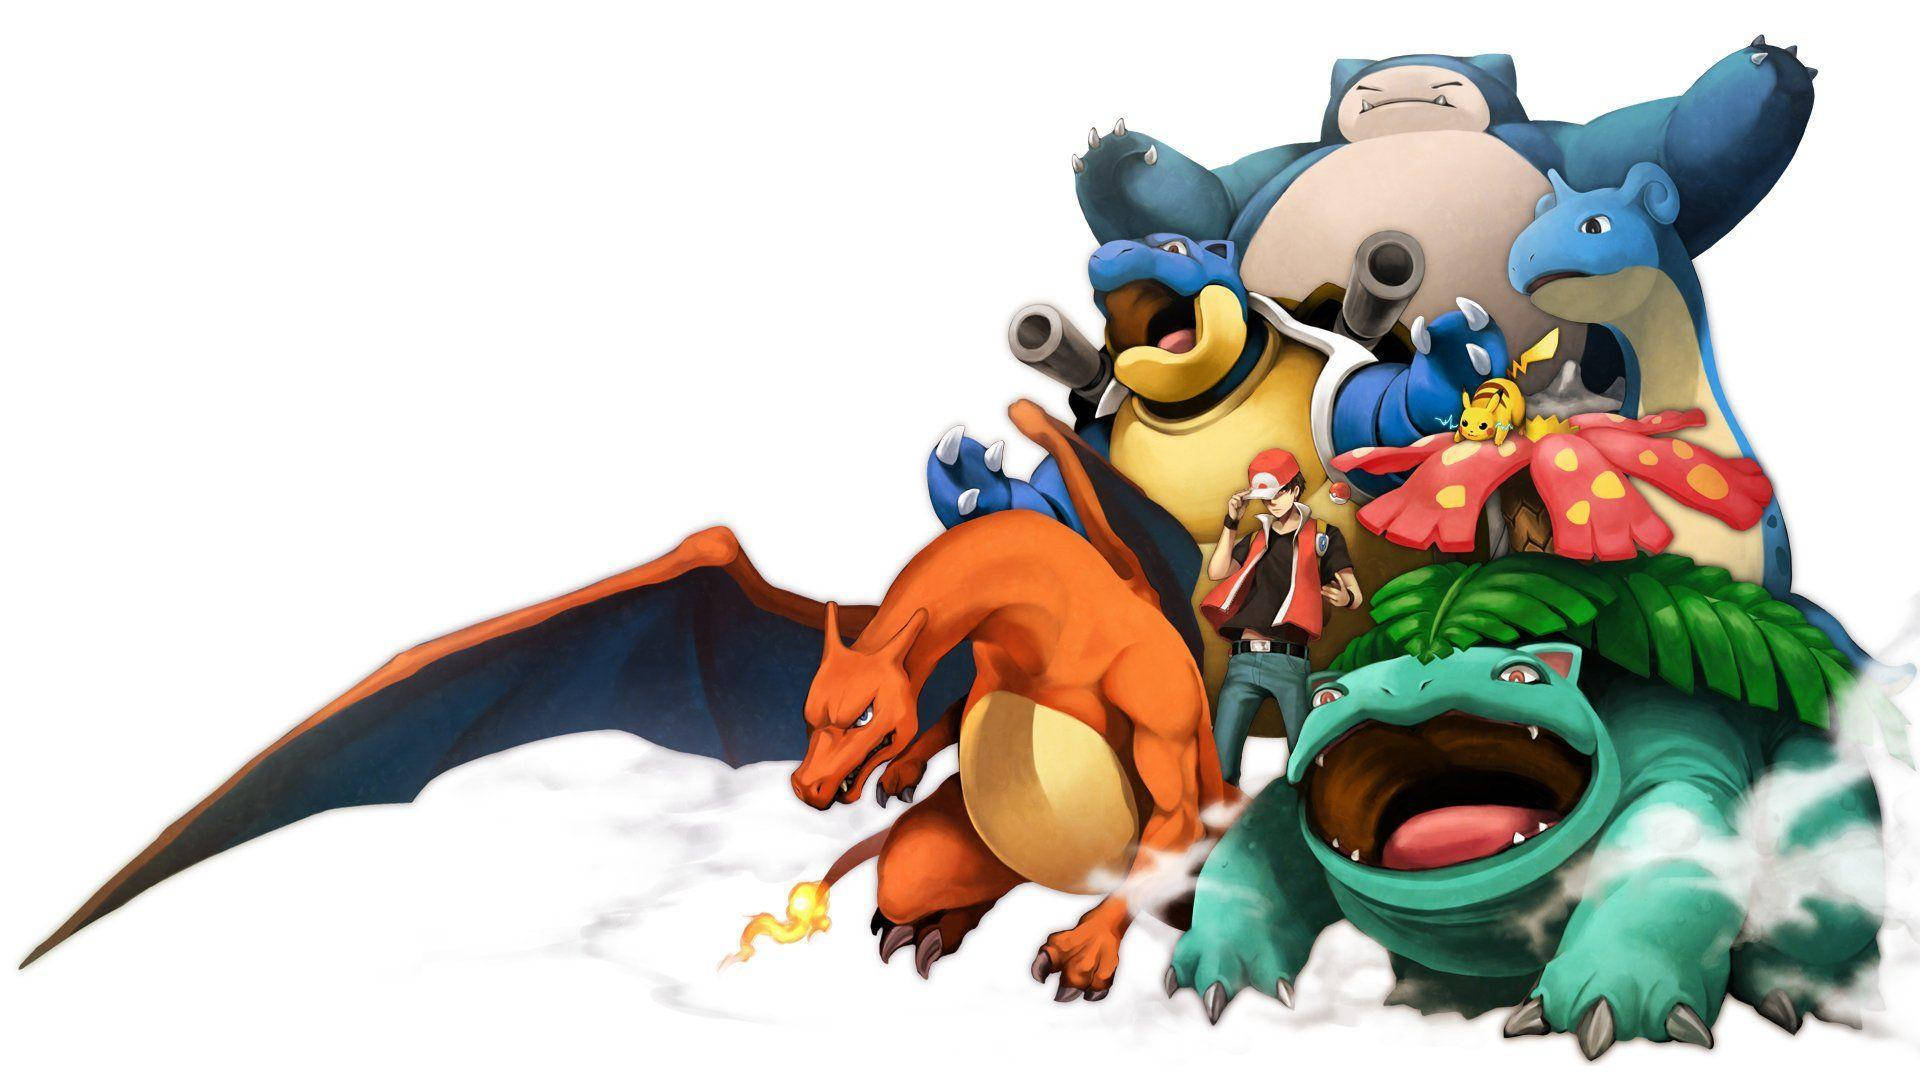 Denne tapet viser Lapras, Charizard og andre Pokémon. Wallpaper